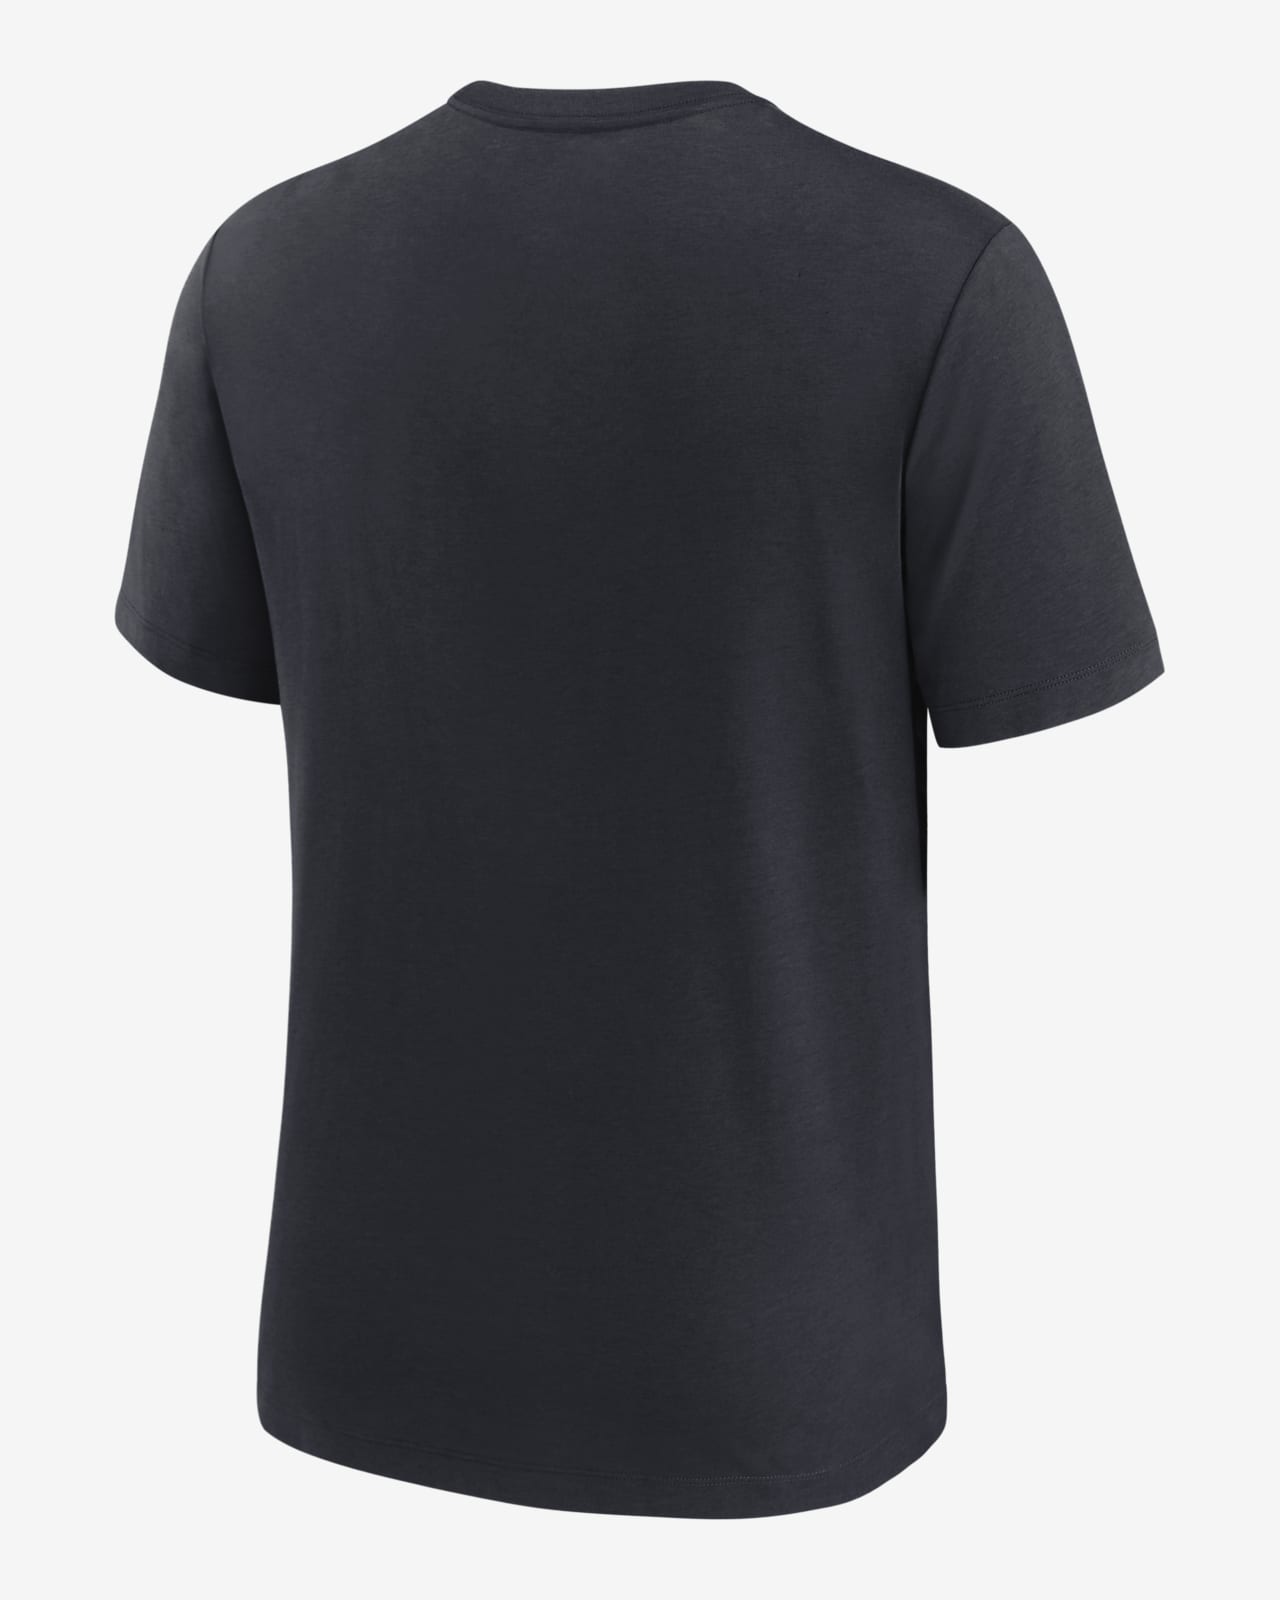 Nike, Shirts, Nike Drifit Yankees Baseball T Shirt Large Mens Black